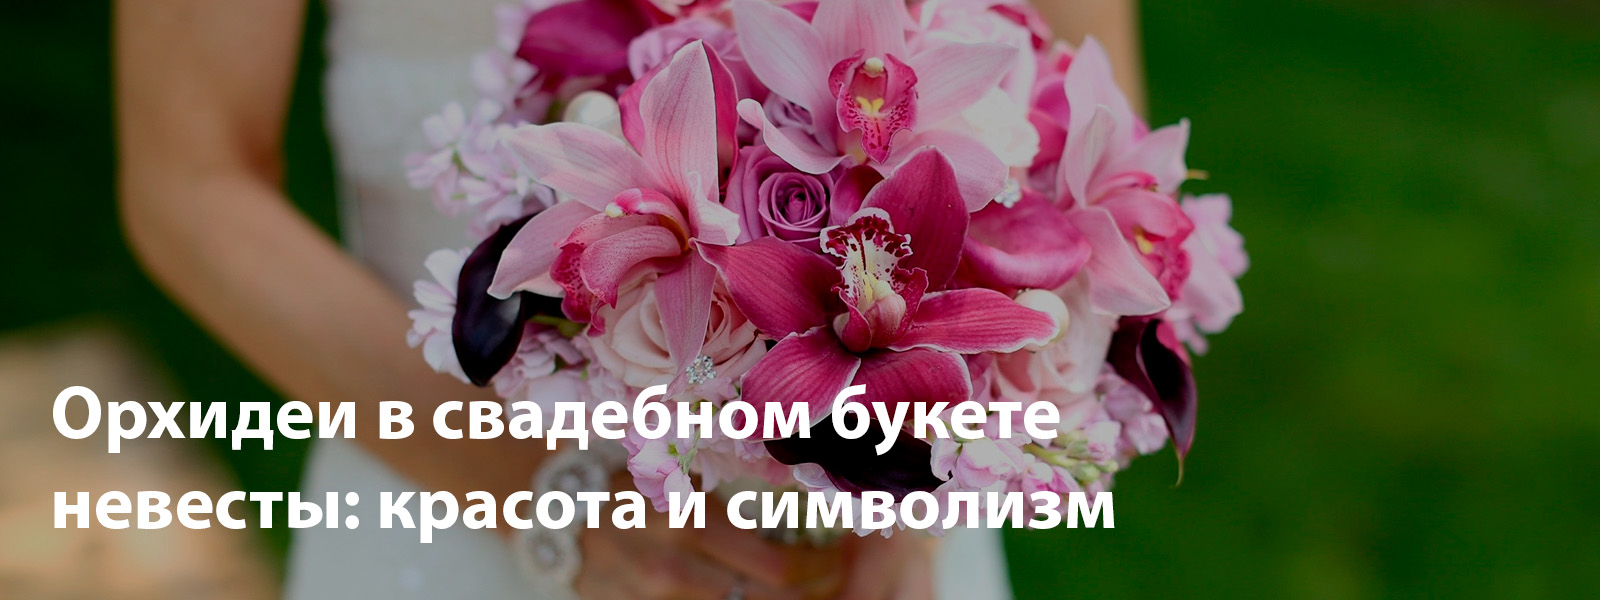 Орхидеи в свадебном букете невесты: красота и символизм